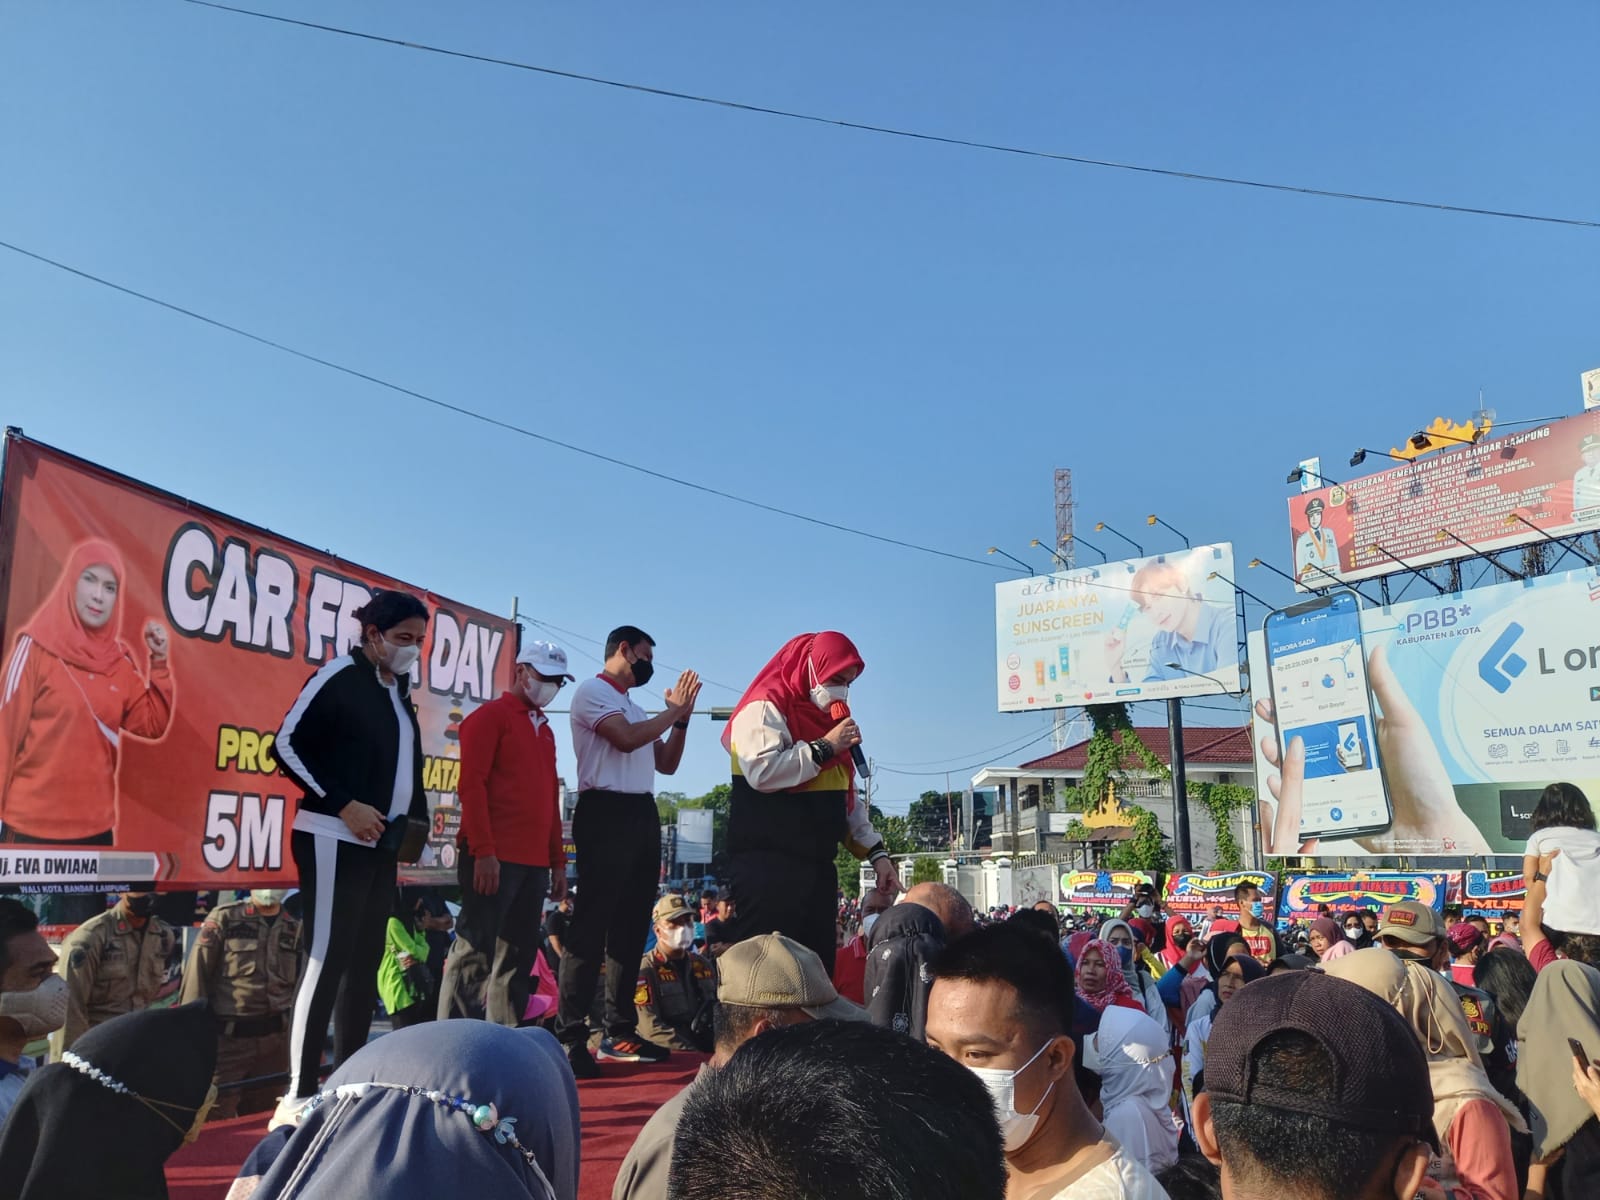 Wali Kota Bandar Lampung Eva Dwiana saat membuka CDF Perdana setelah Pandemi, di Tugu Adipura Bandar Lampung / Foto Saibetik.com